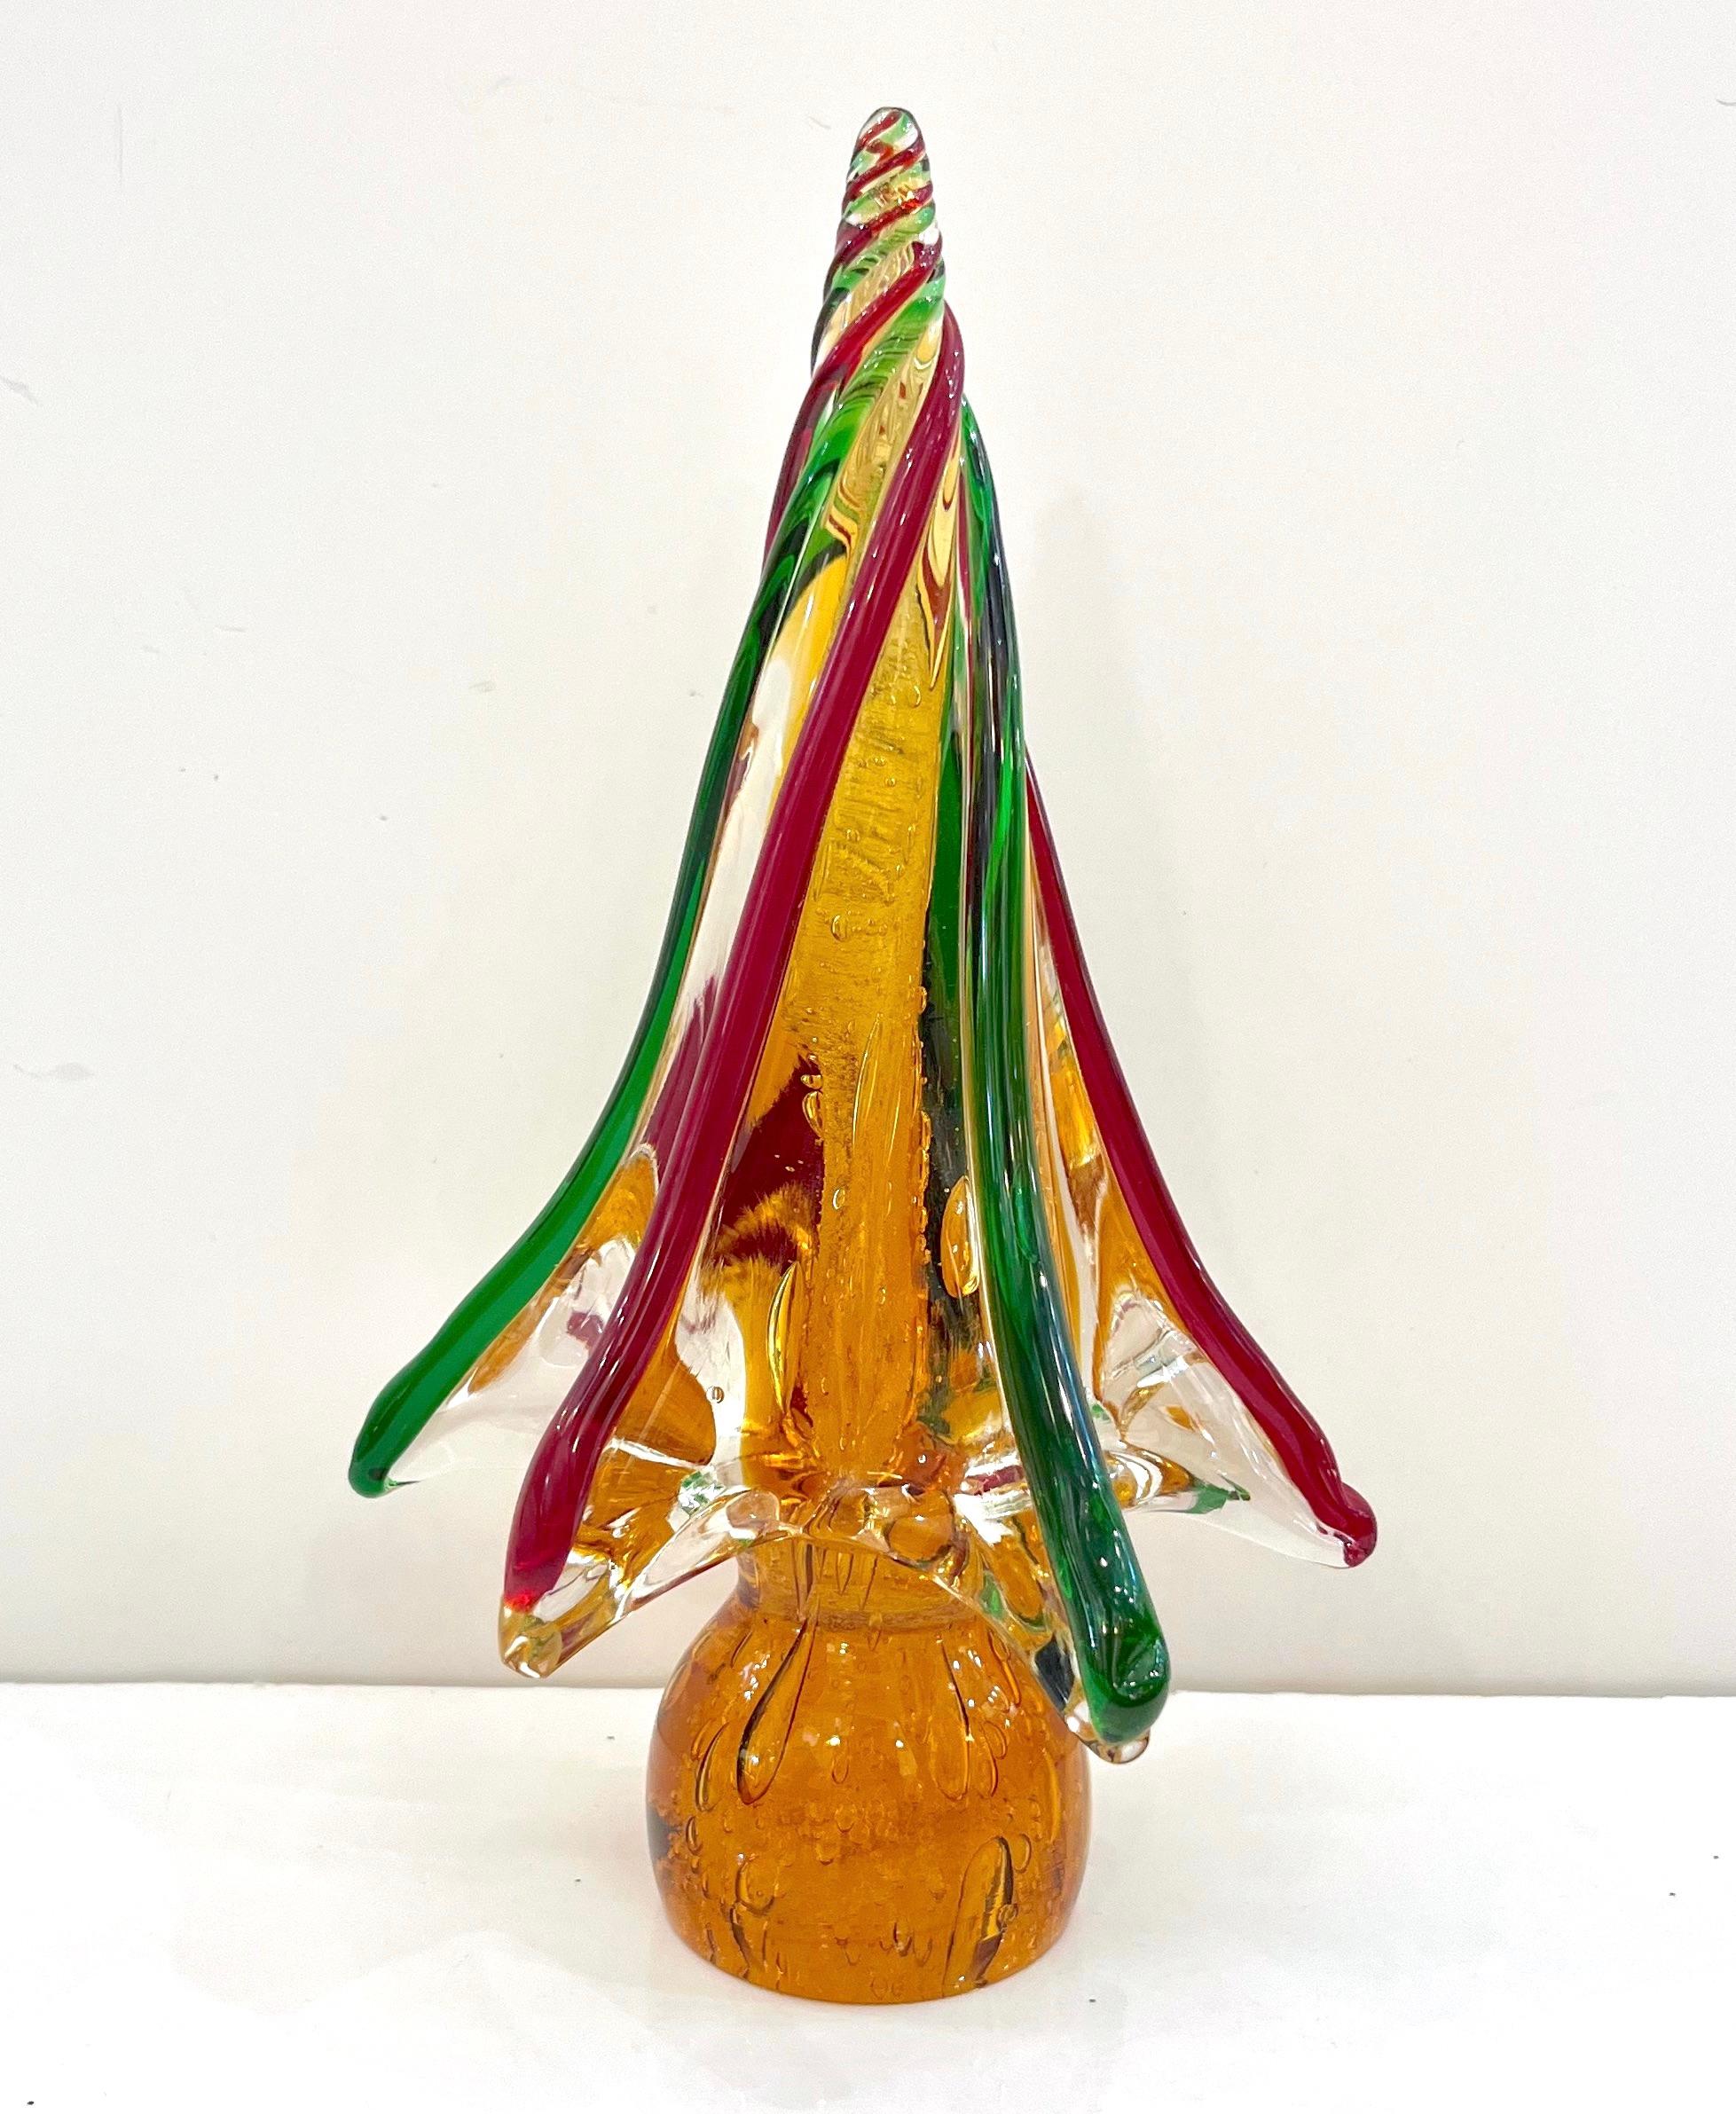 Murano-Glasbäume mit organischem, schlichtem und modernem Design, eine Vintage-Kreation der venezianischen Firma Formia, signierte Stücke, einzeln mundgeblasen und handgefertigt. Kostbar durch die Anwendung der Pulegoso-Technik in einem